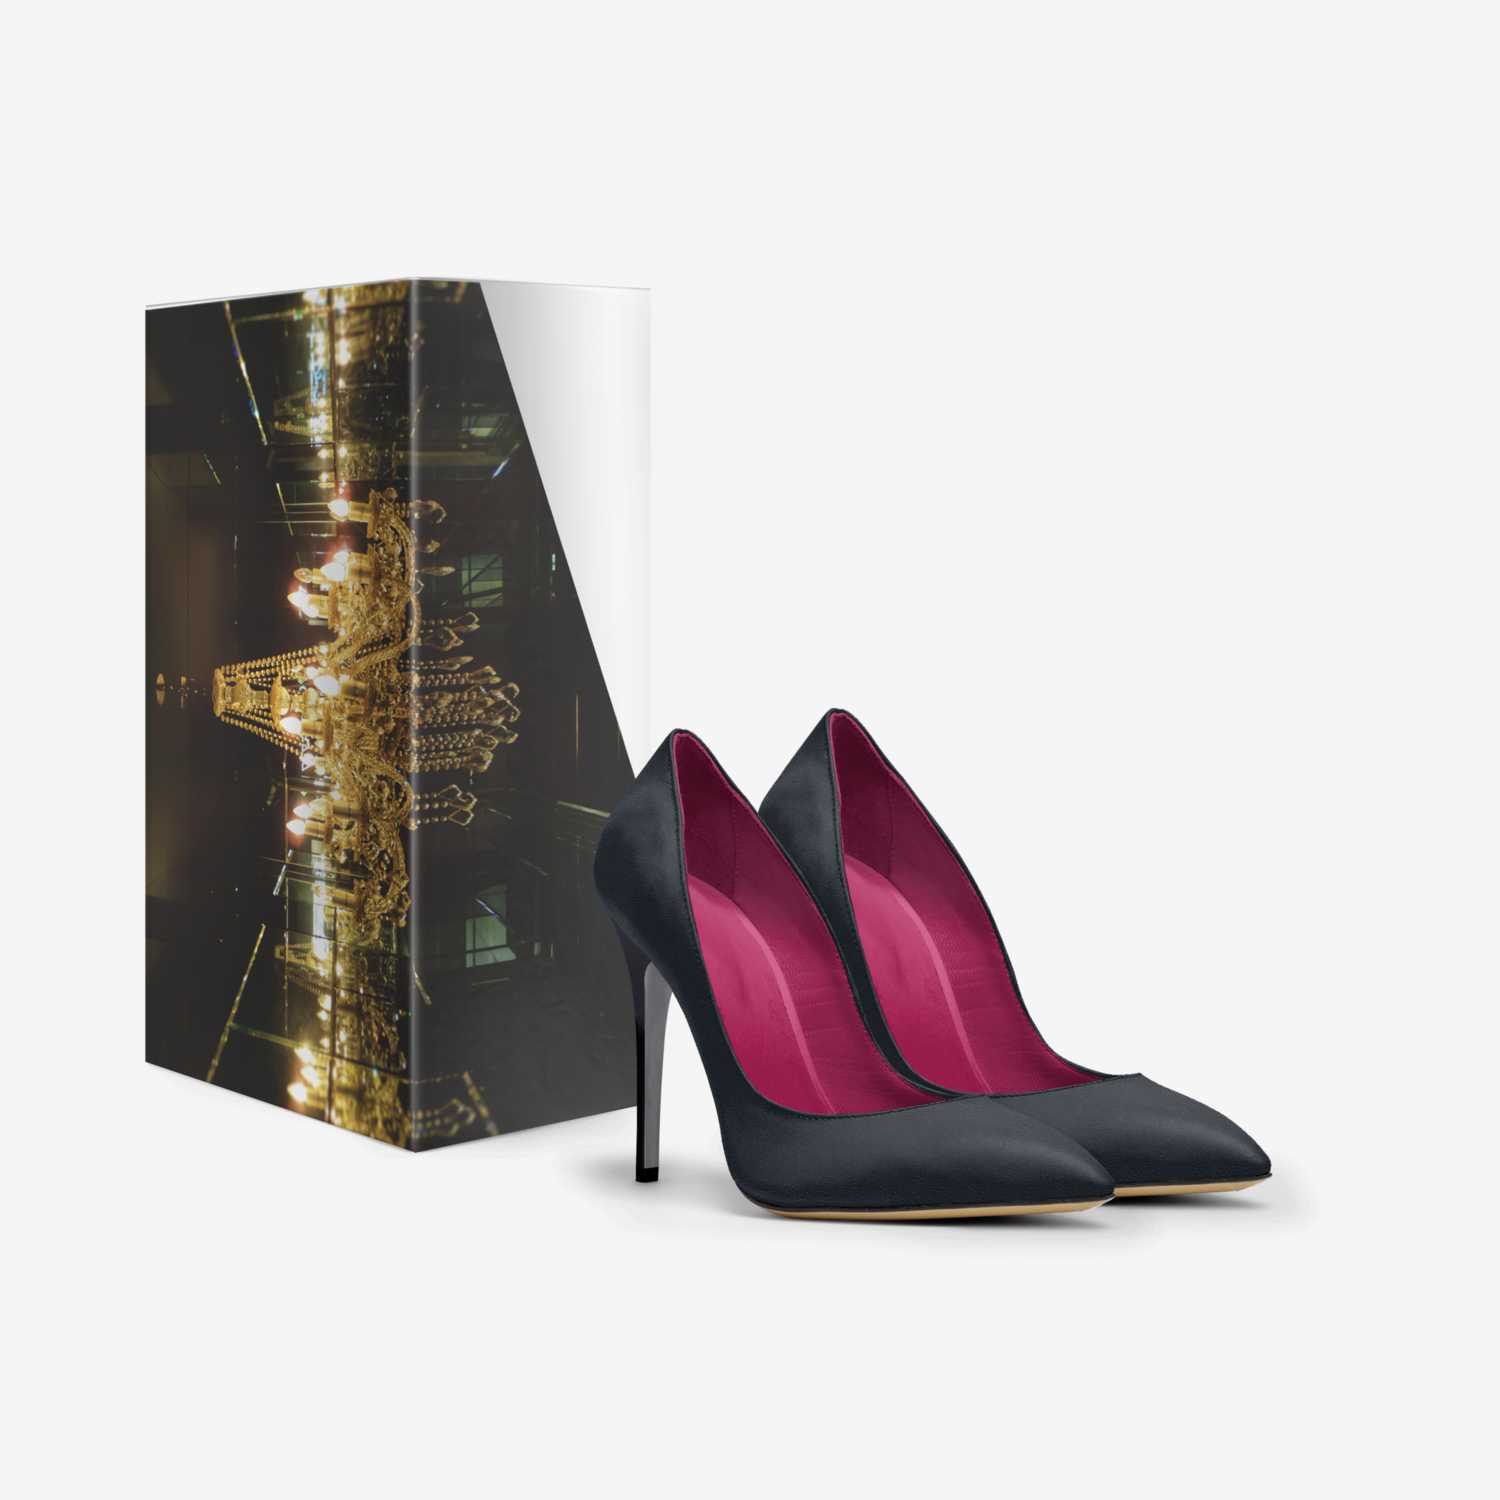 Nicole Giovanna  custom made in Italy shoes by Latoya Martin | Box view